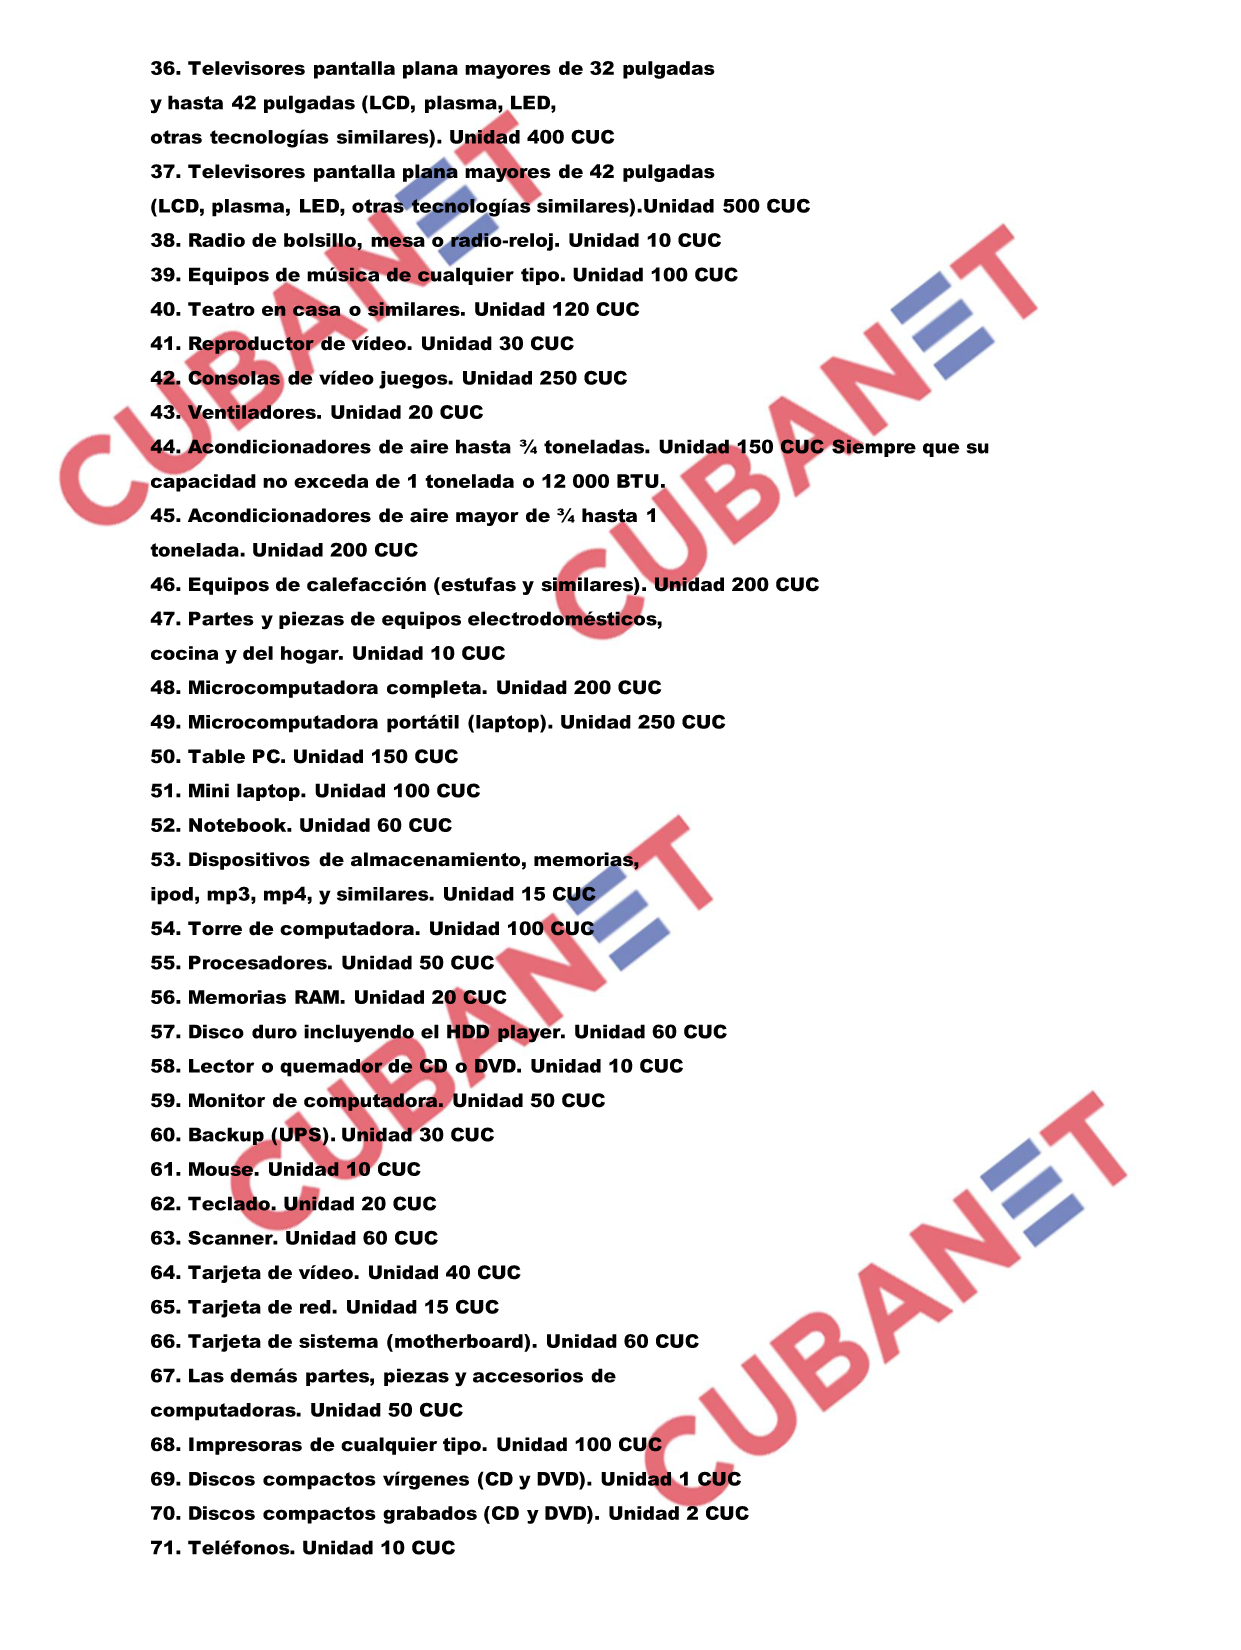 Listado de las nuevas regulaciones aduanales en Cuba2